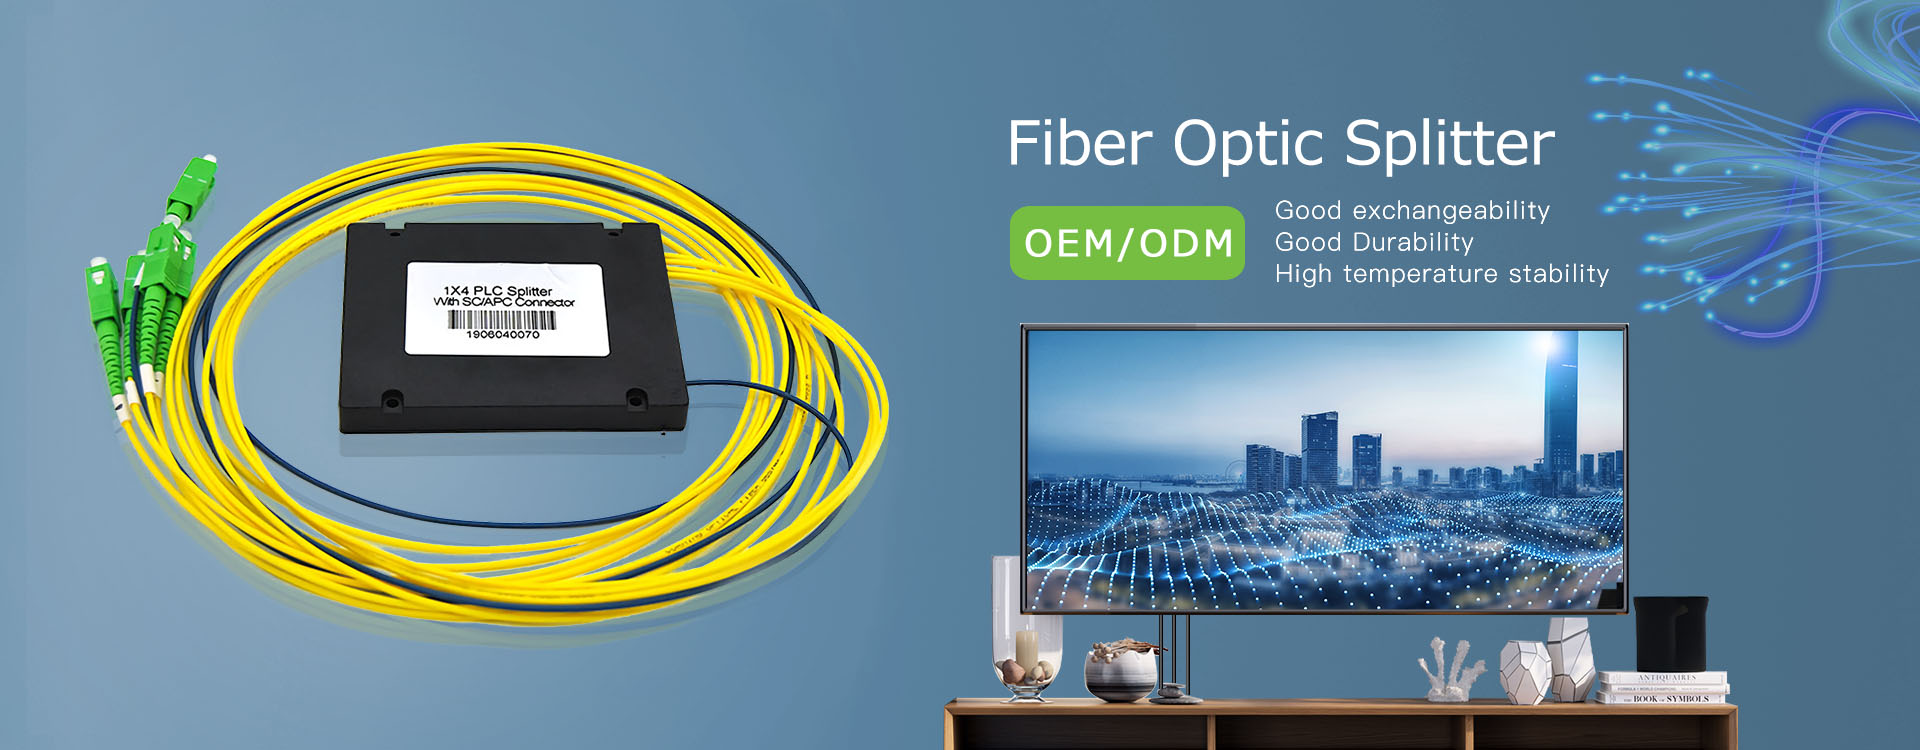 Design de divisor de fibra óptica de alta precisão mais recente para clientes